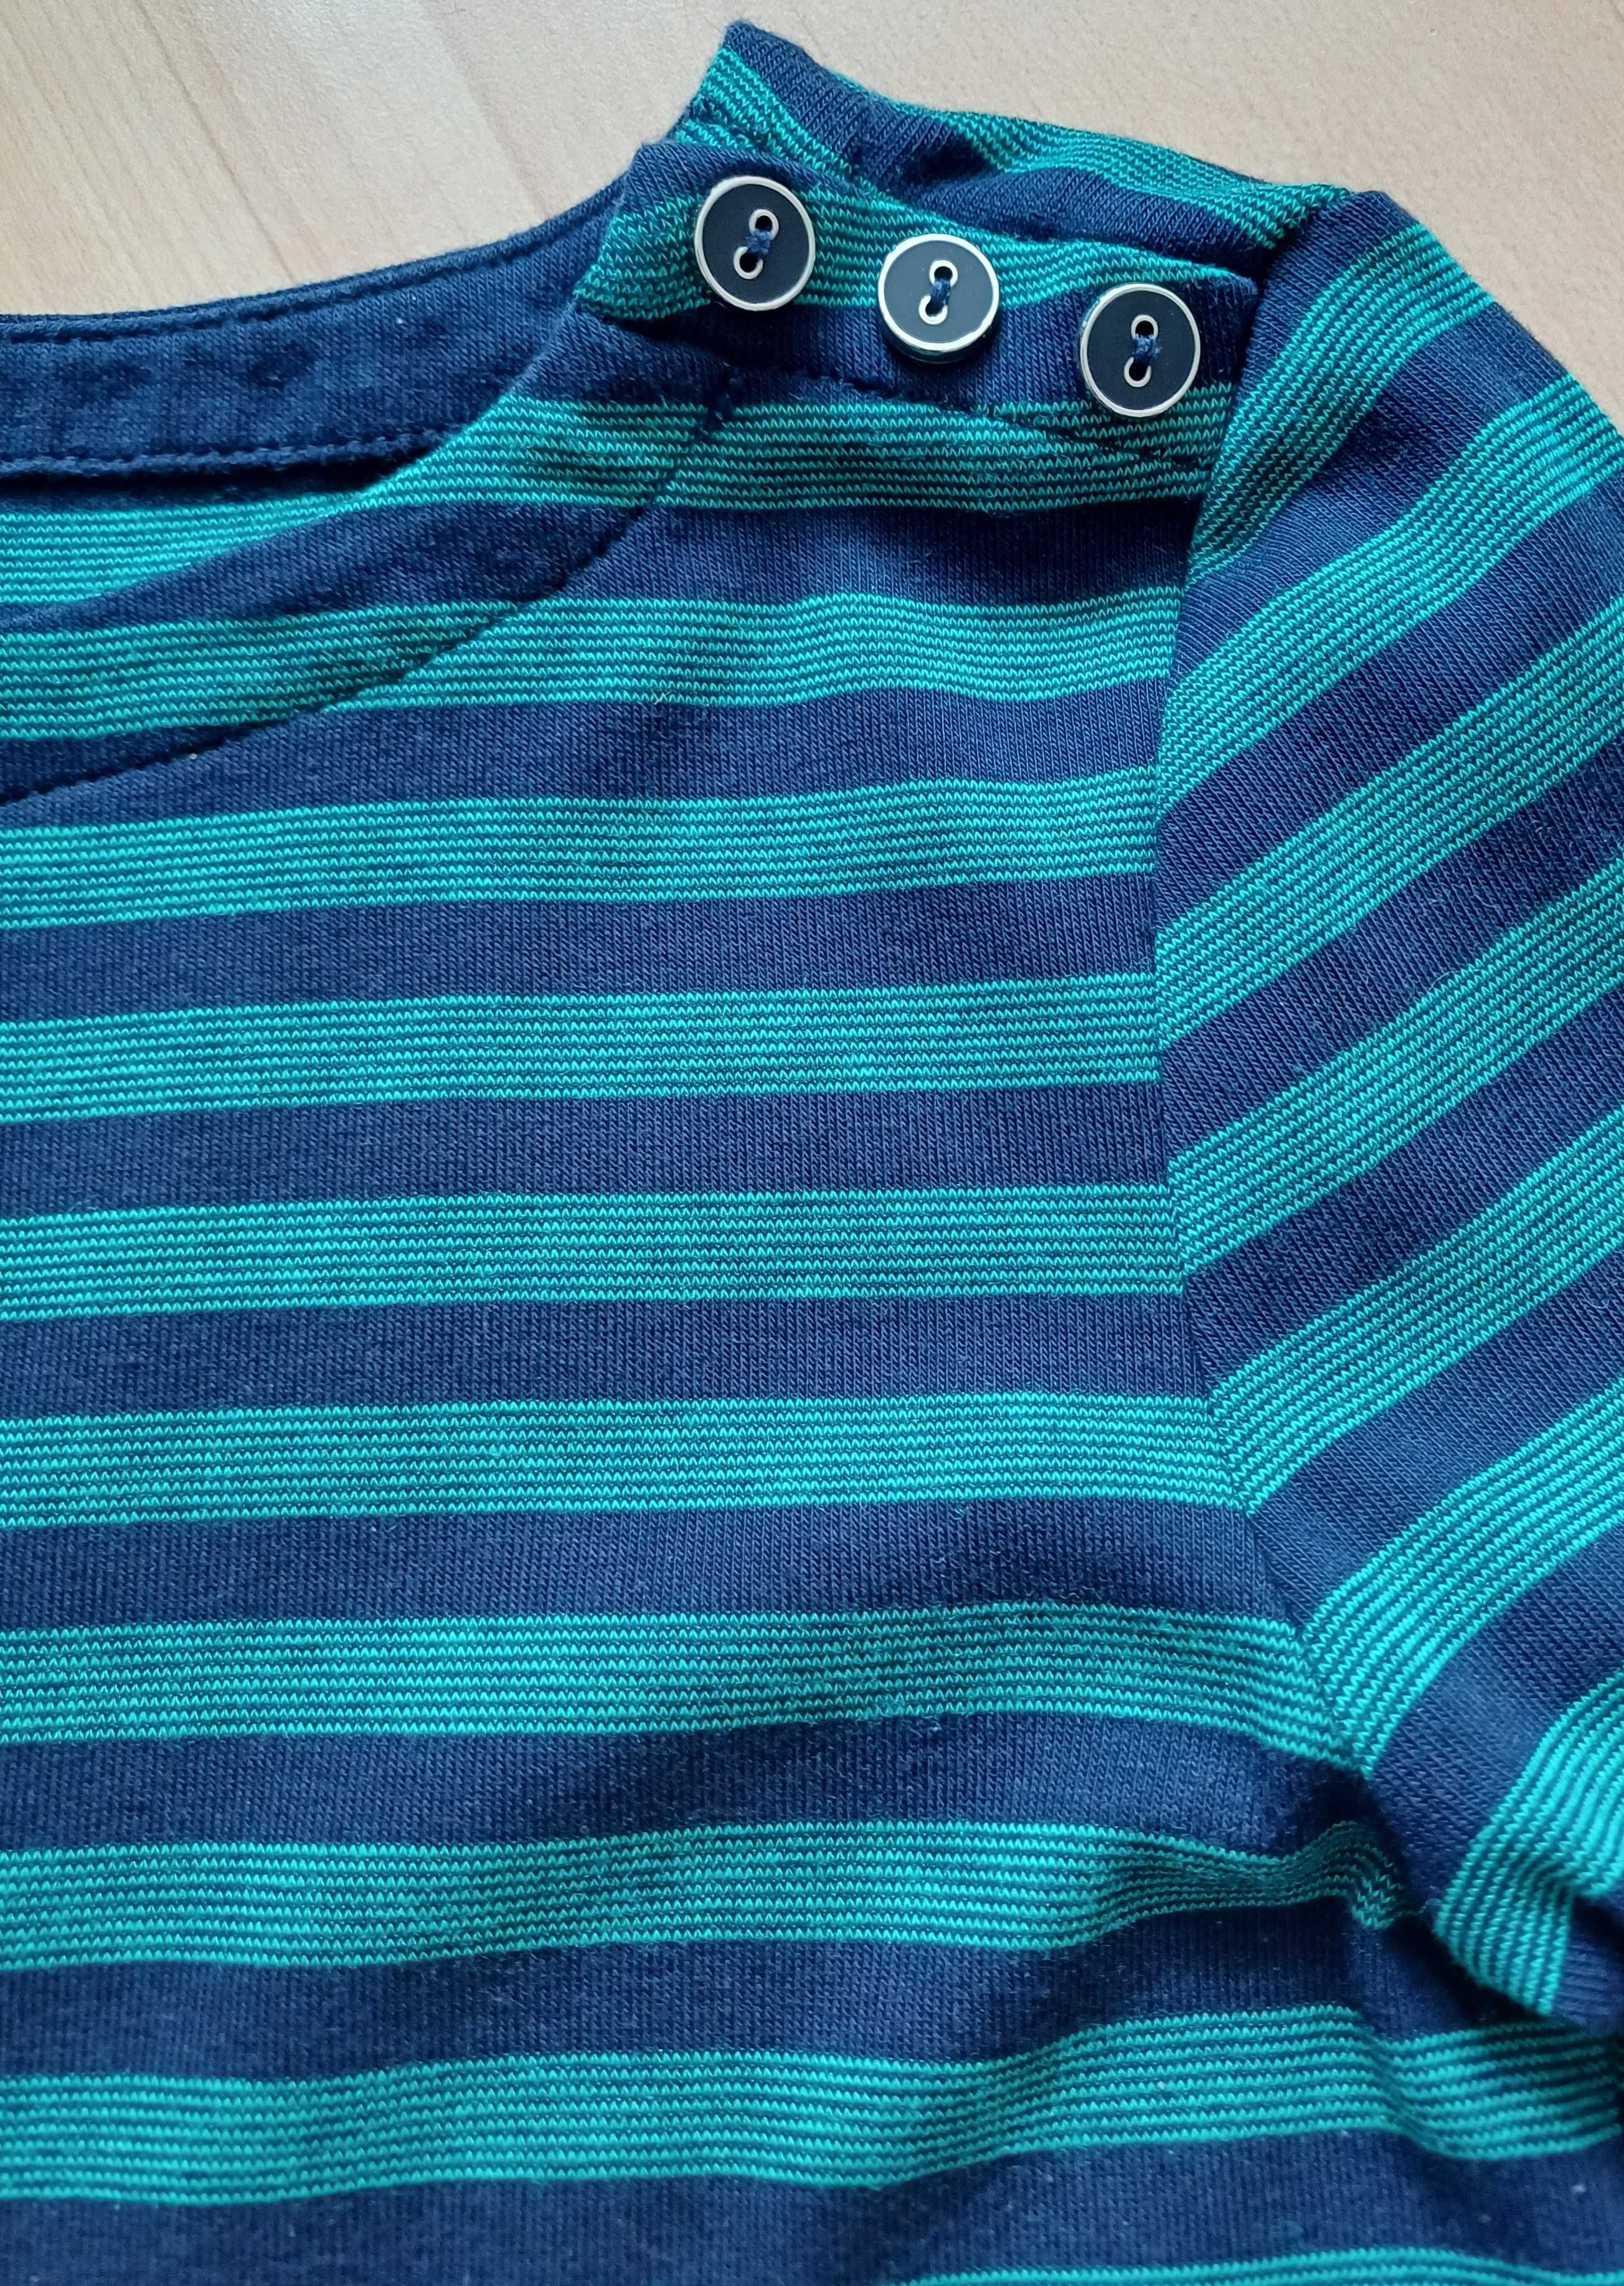 Bluzka damska sweter zielony w paski bawełna, elastan, 36/S